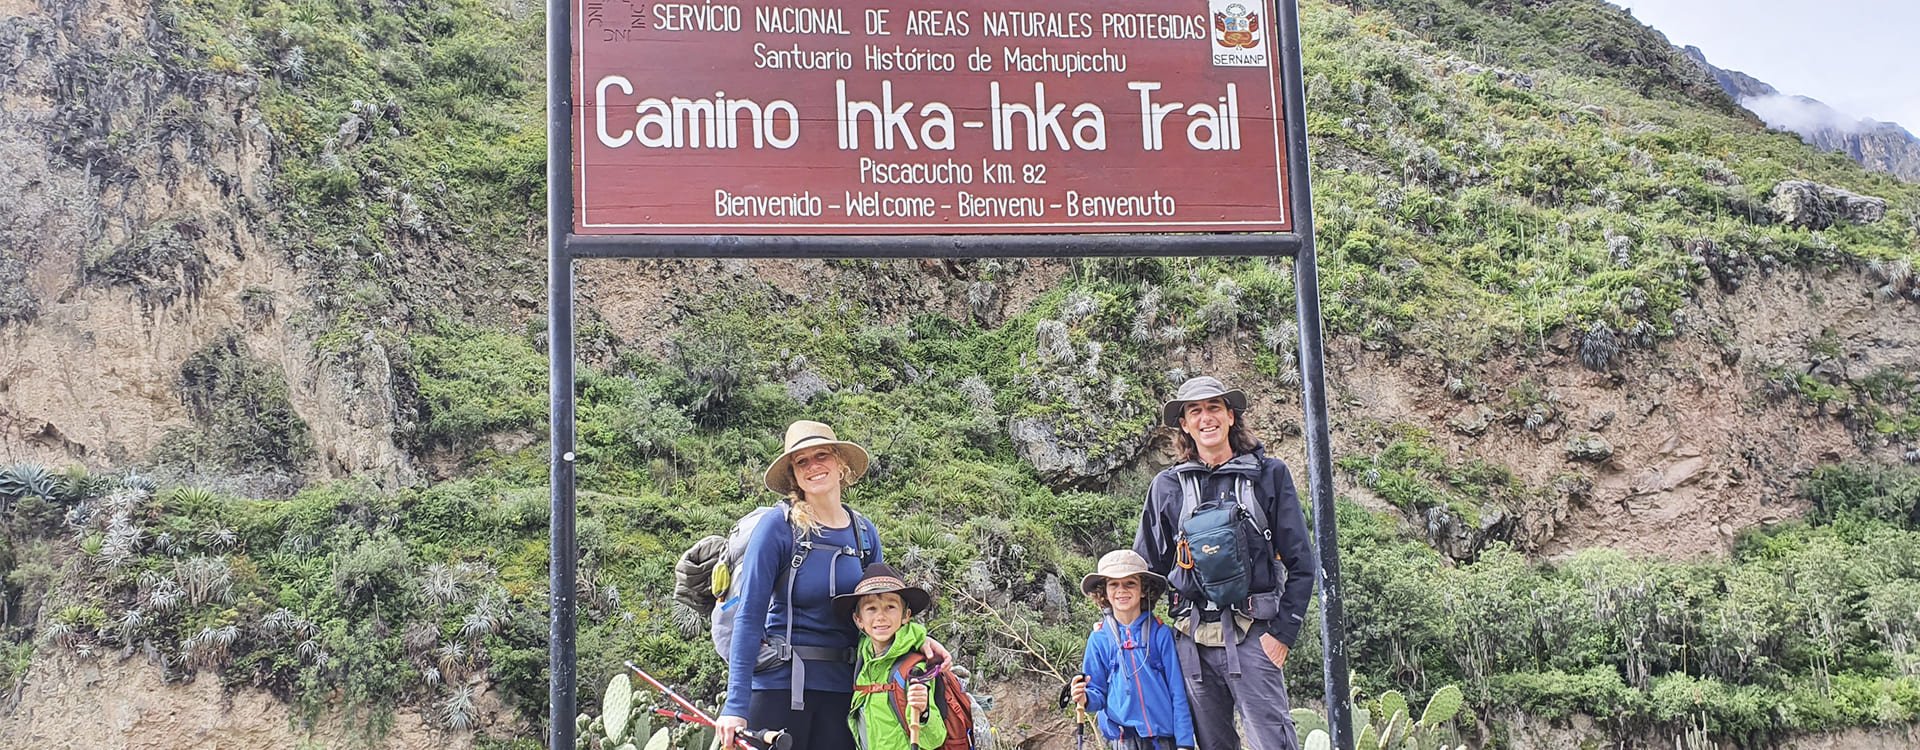 camino inca 4 dias inka trail